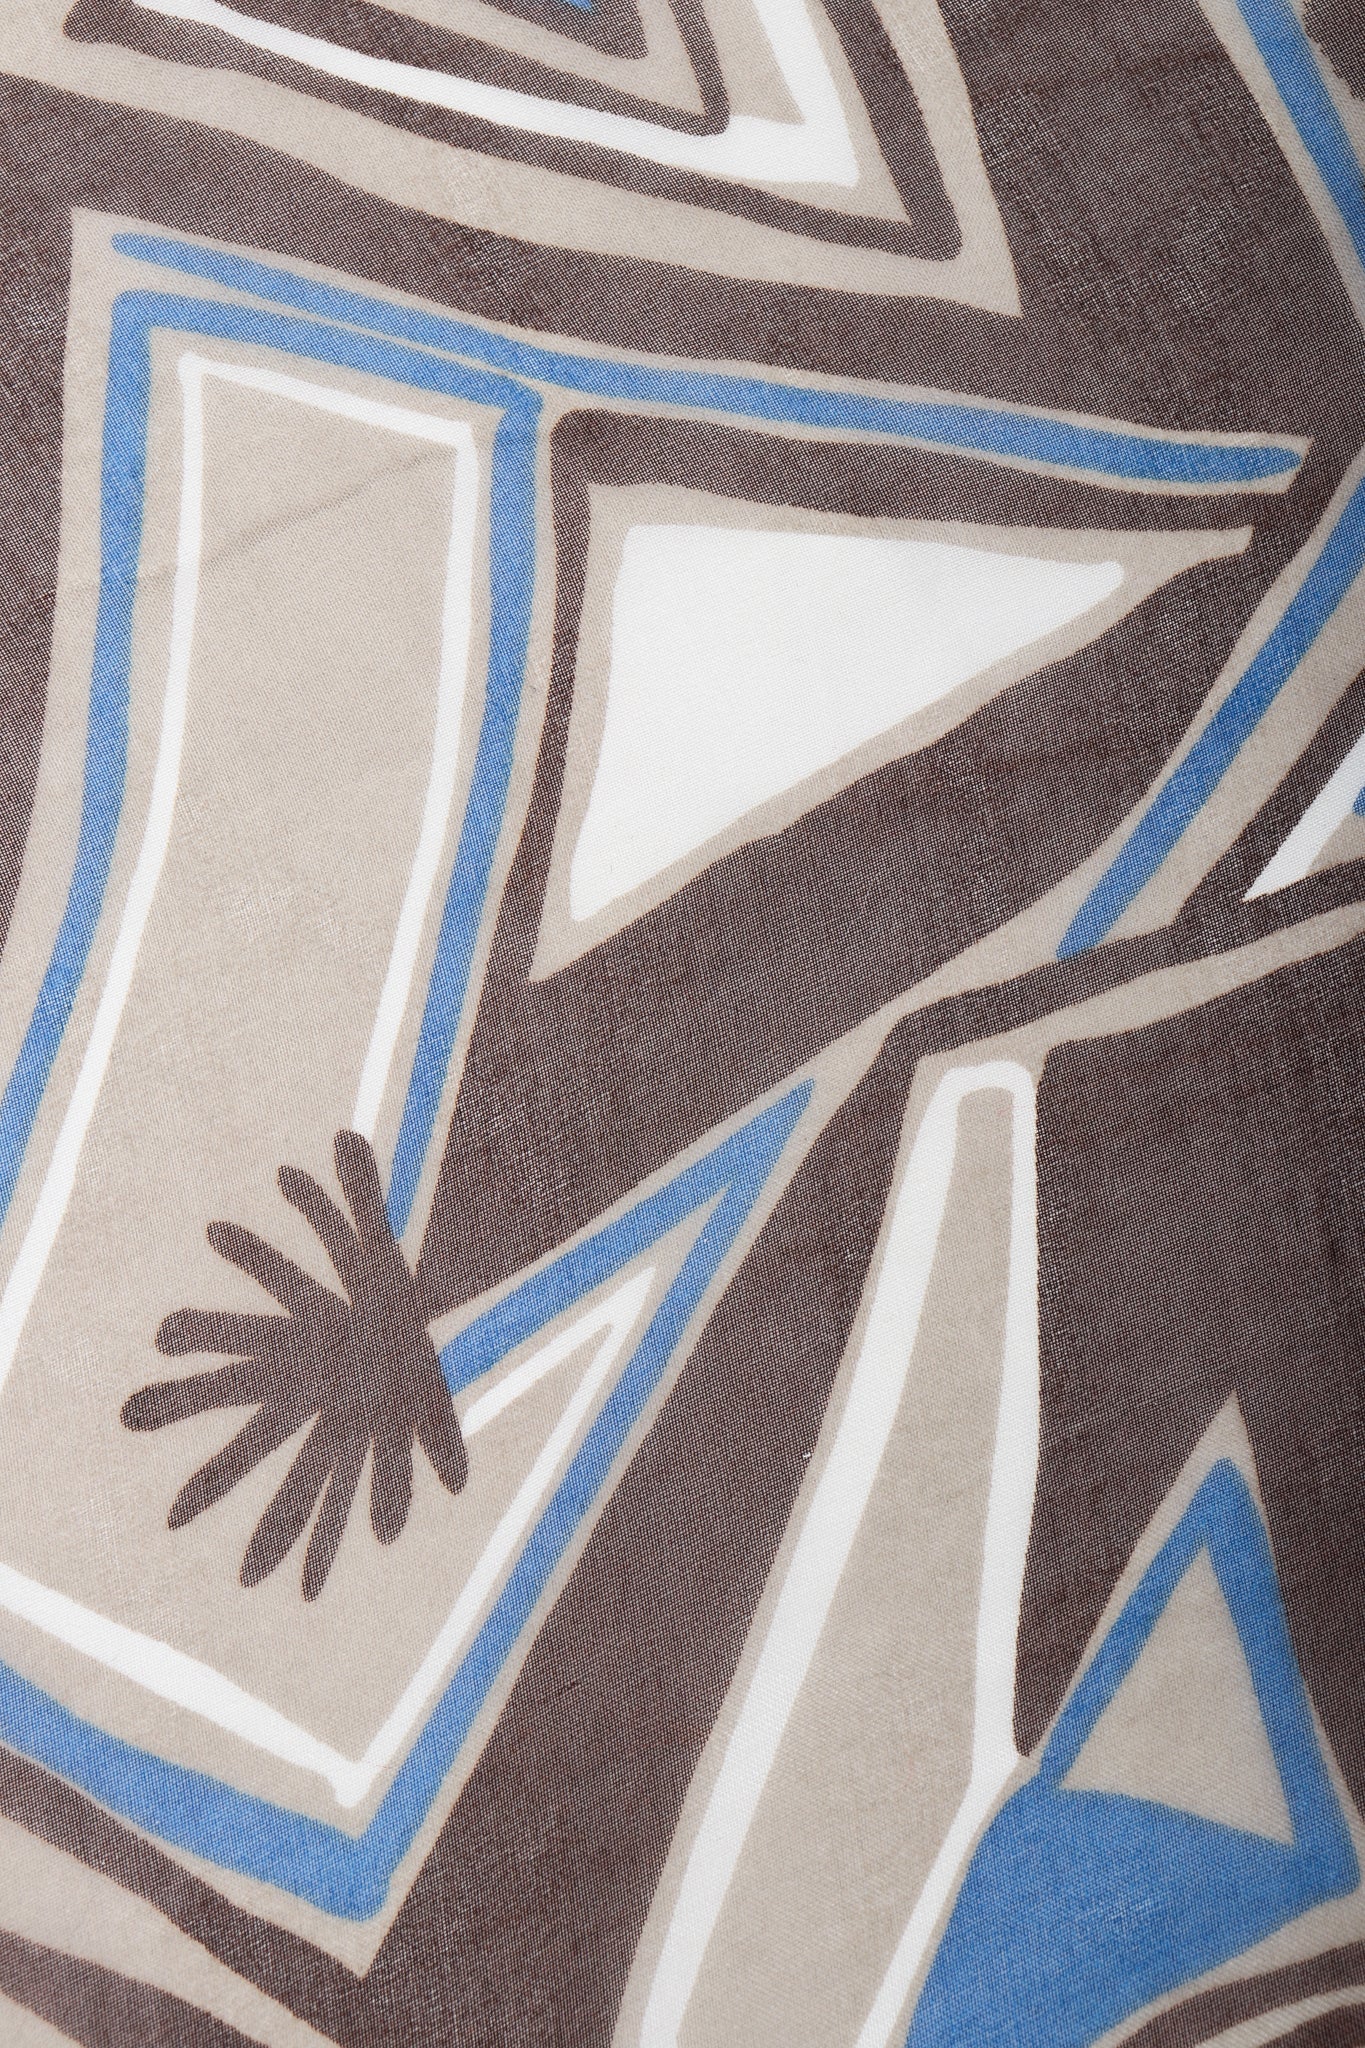 Vintage Yves Saint Laurent YSL Rive Gauche Wax Print Ankara Organza fabric and run